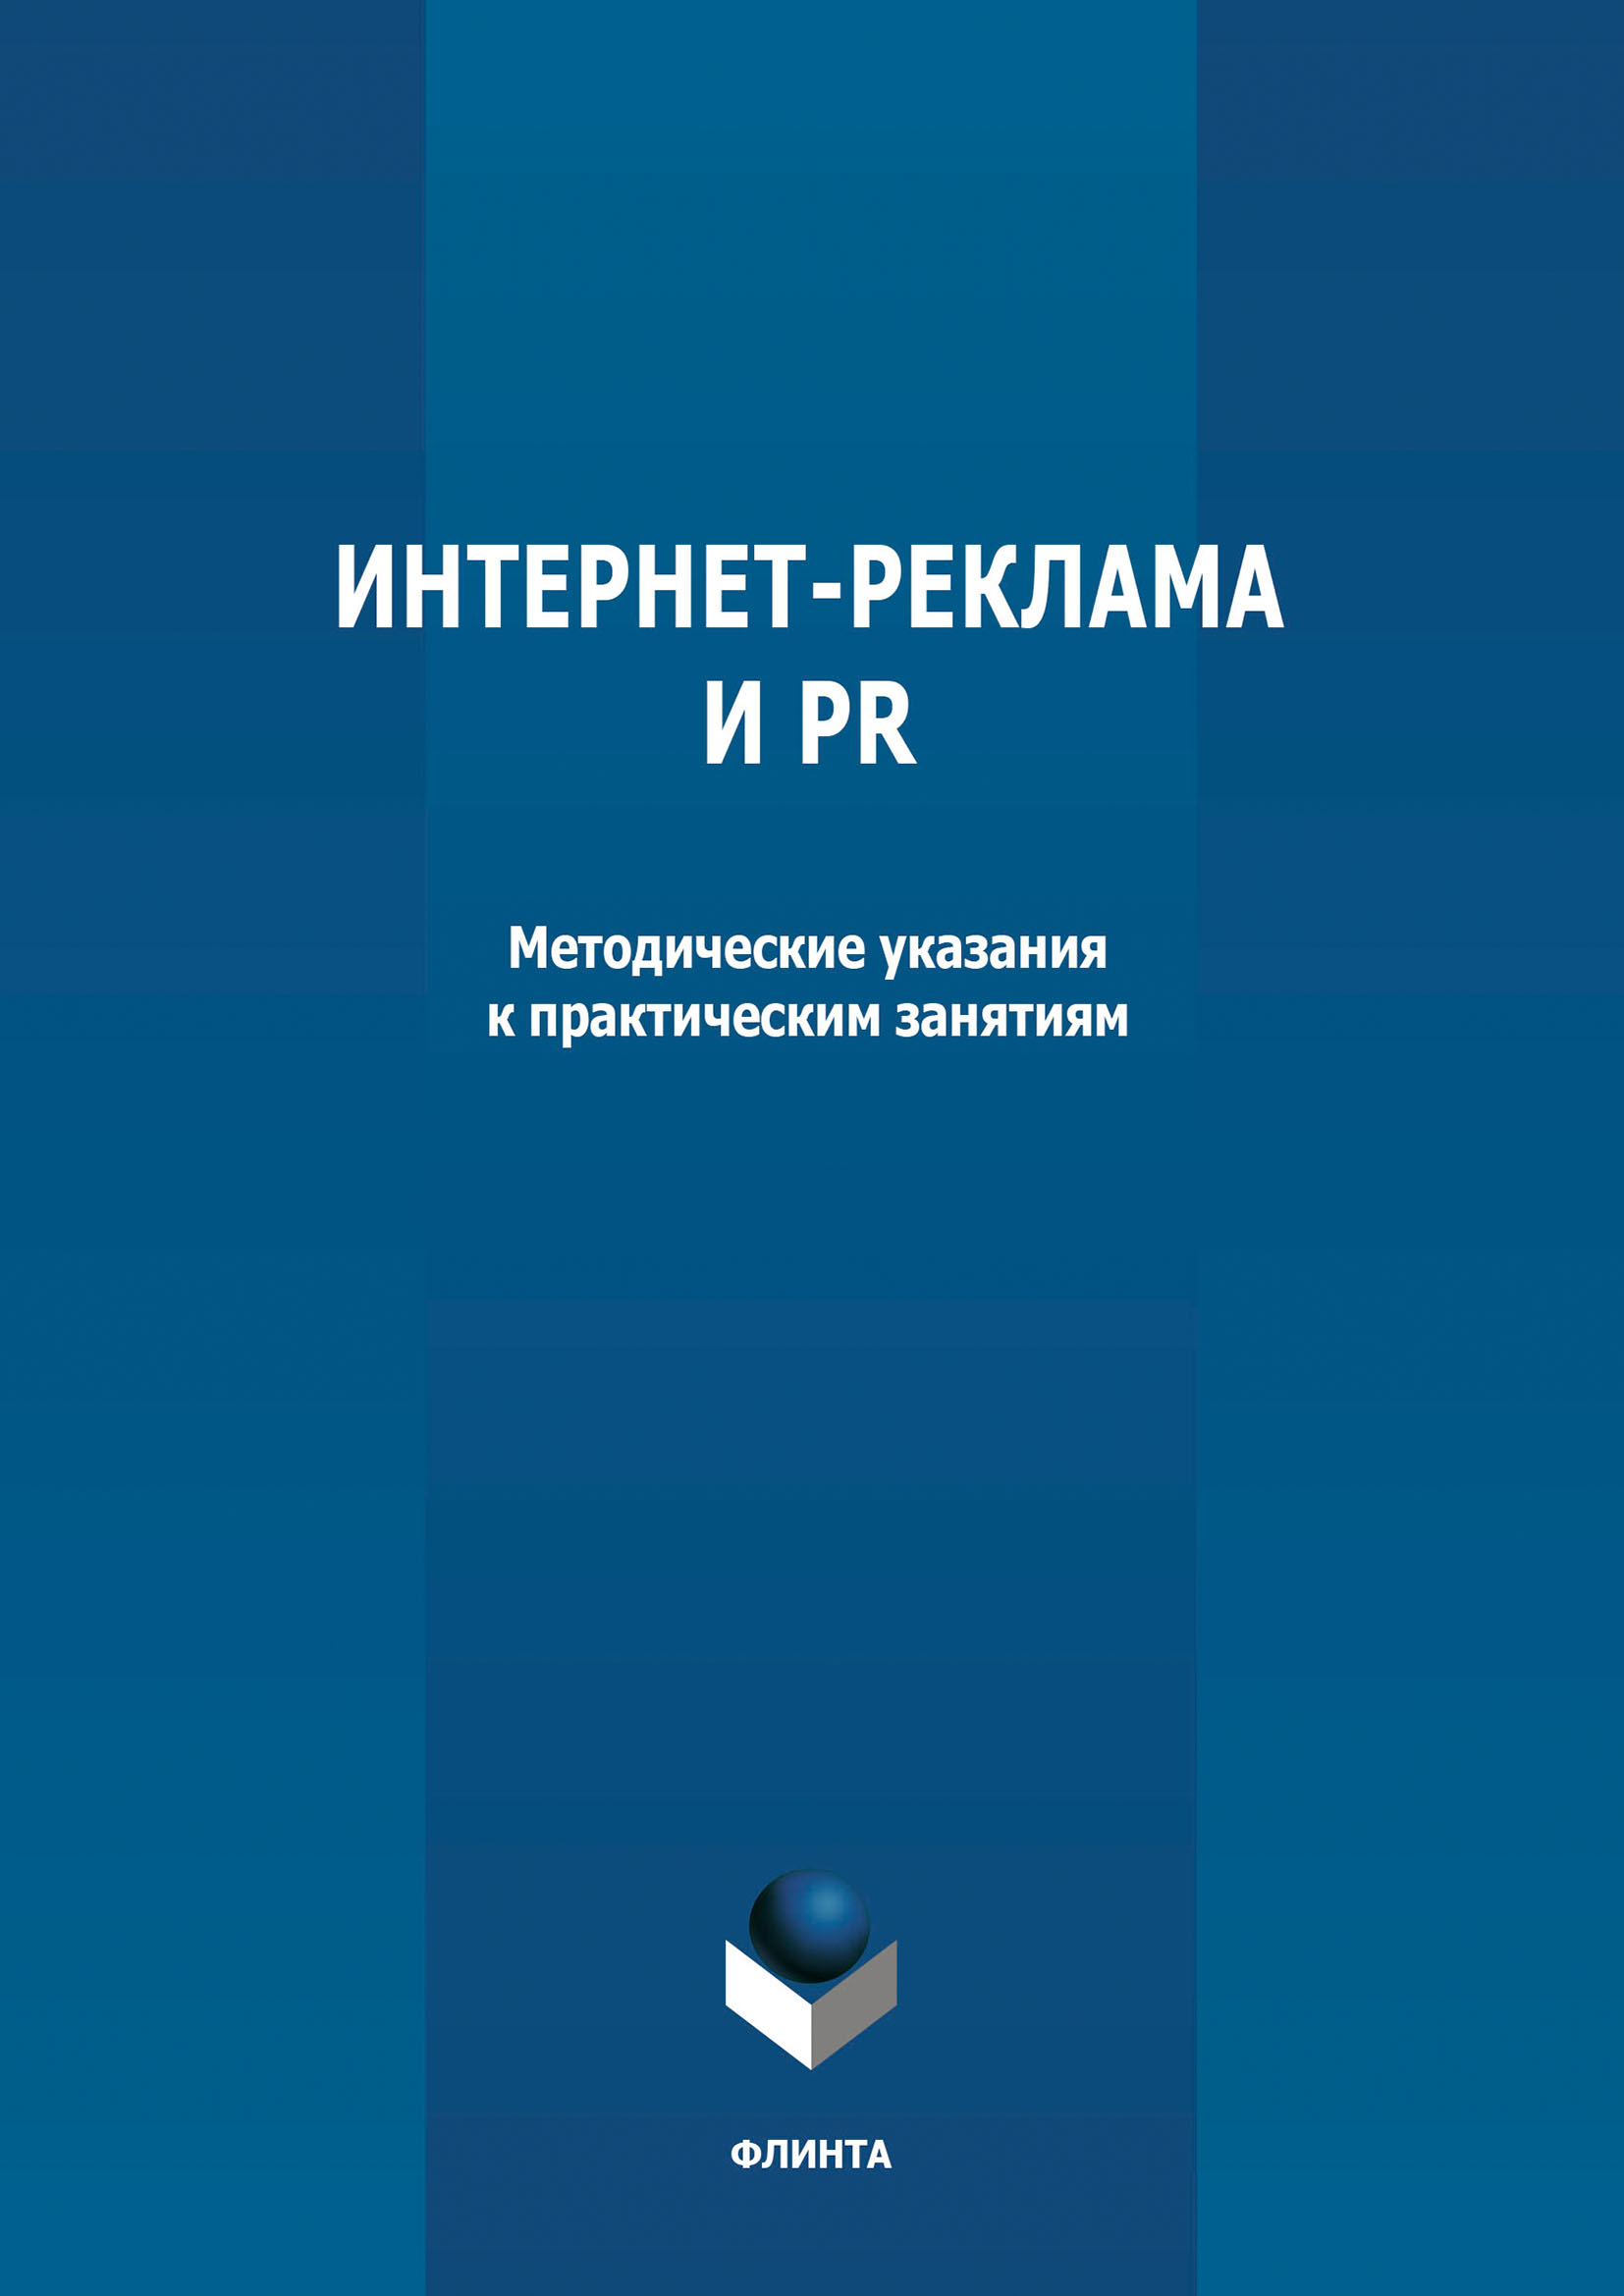 Книга  Интернет-реклама и PR созданная М. С. Круглова может относится к жанру реклама, учебно-методические пособия. Стоимость электронной книги Интернет-реклама и PR с идентификатором 66430690 составляет 55.00 руб.